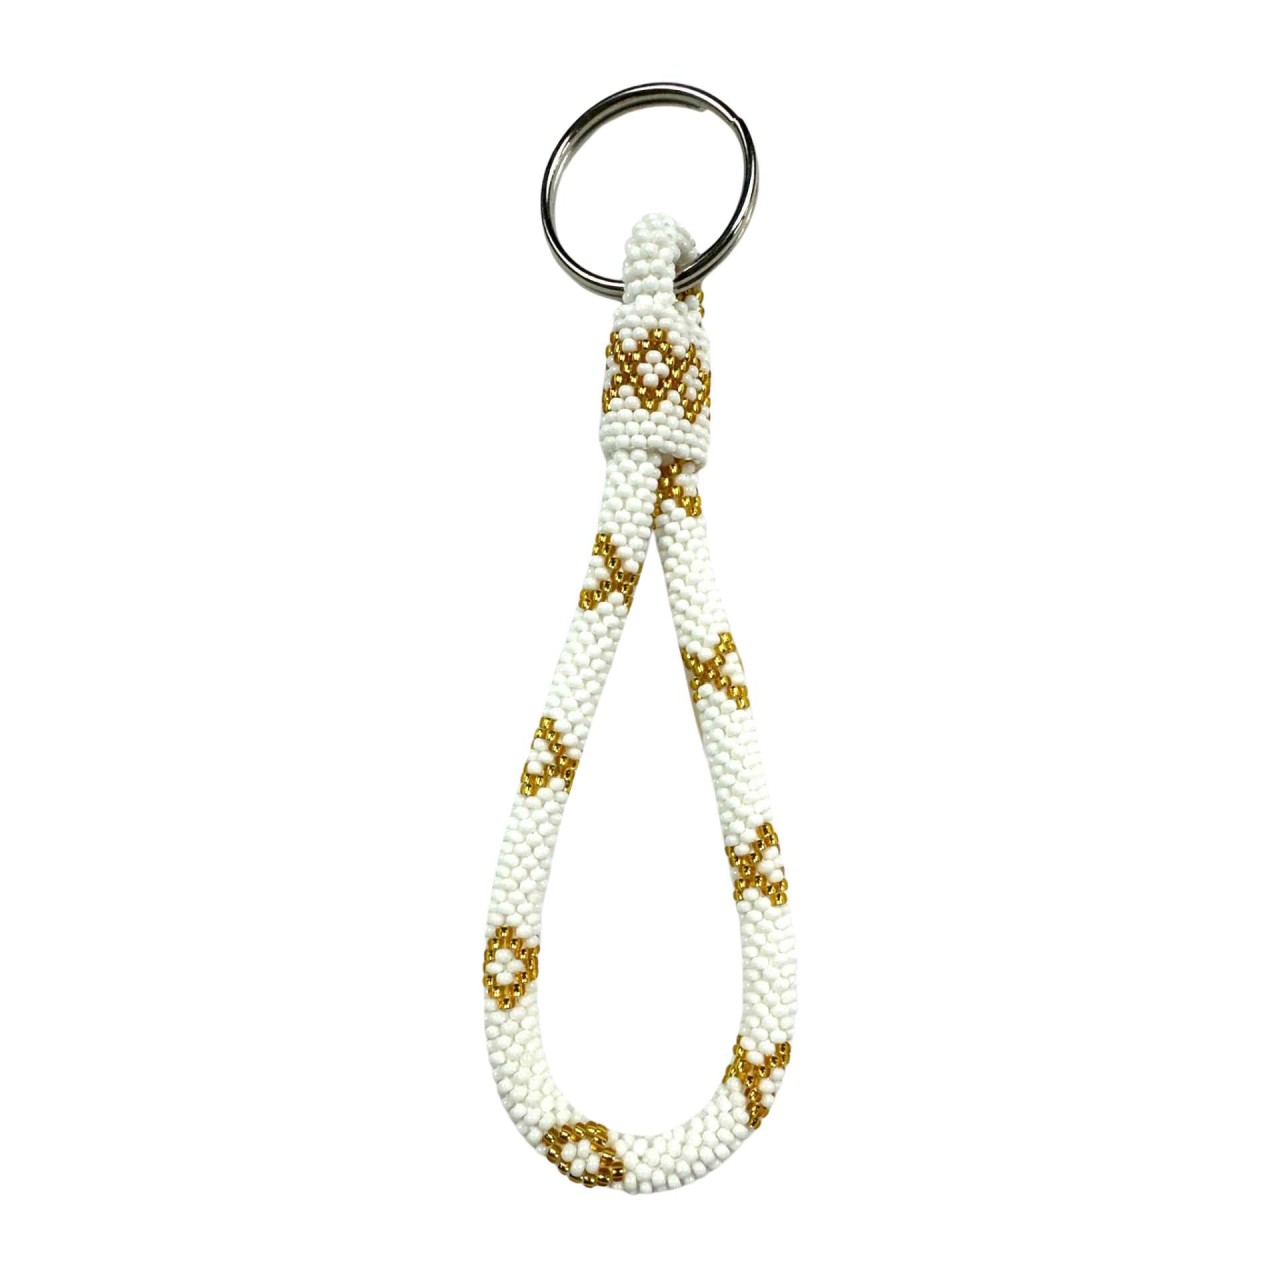 Handgefertigte Perlen Schlüsselanhänger in Weiß und Gold